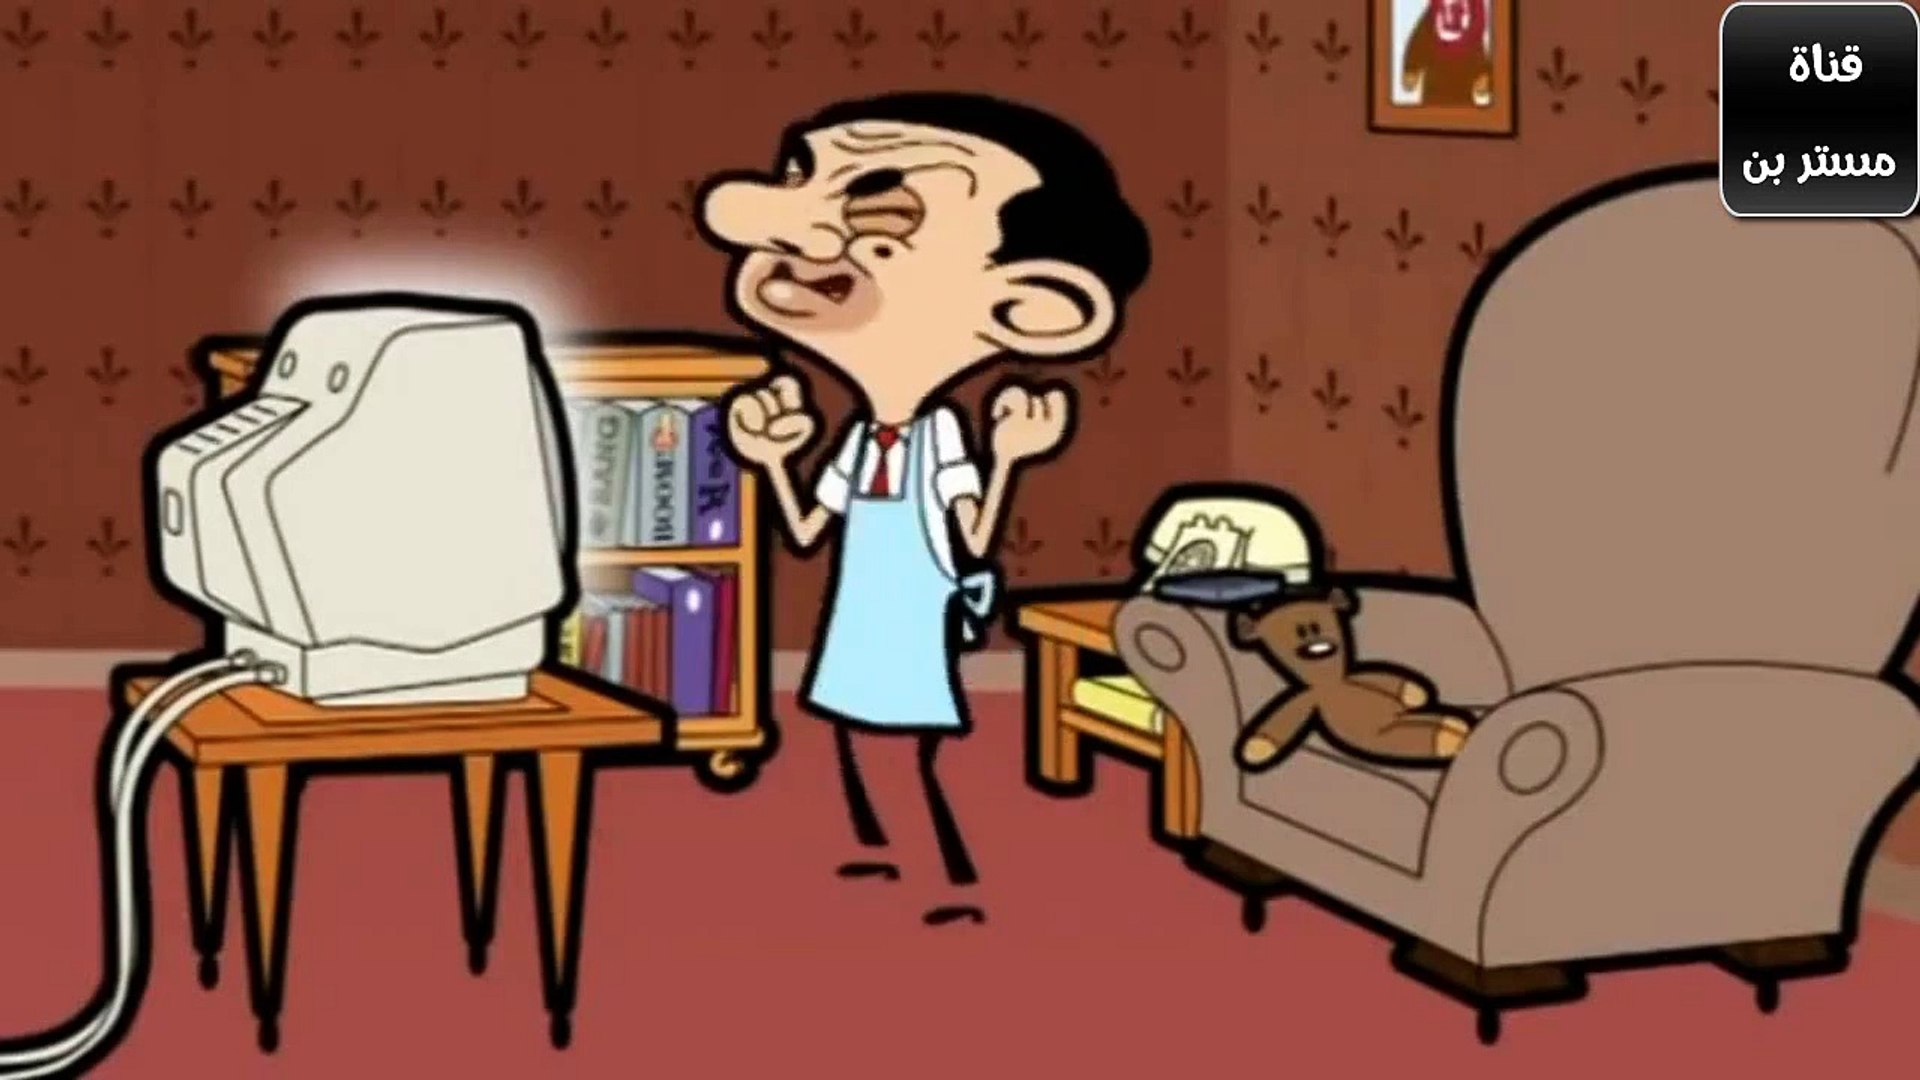 مستر بين كرتون - Mr.Bean Cartoon - Dailymotion Video